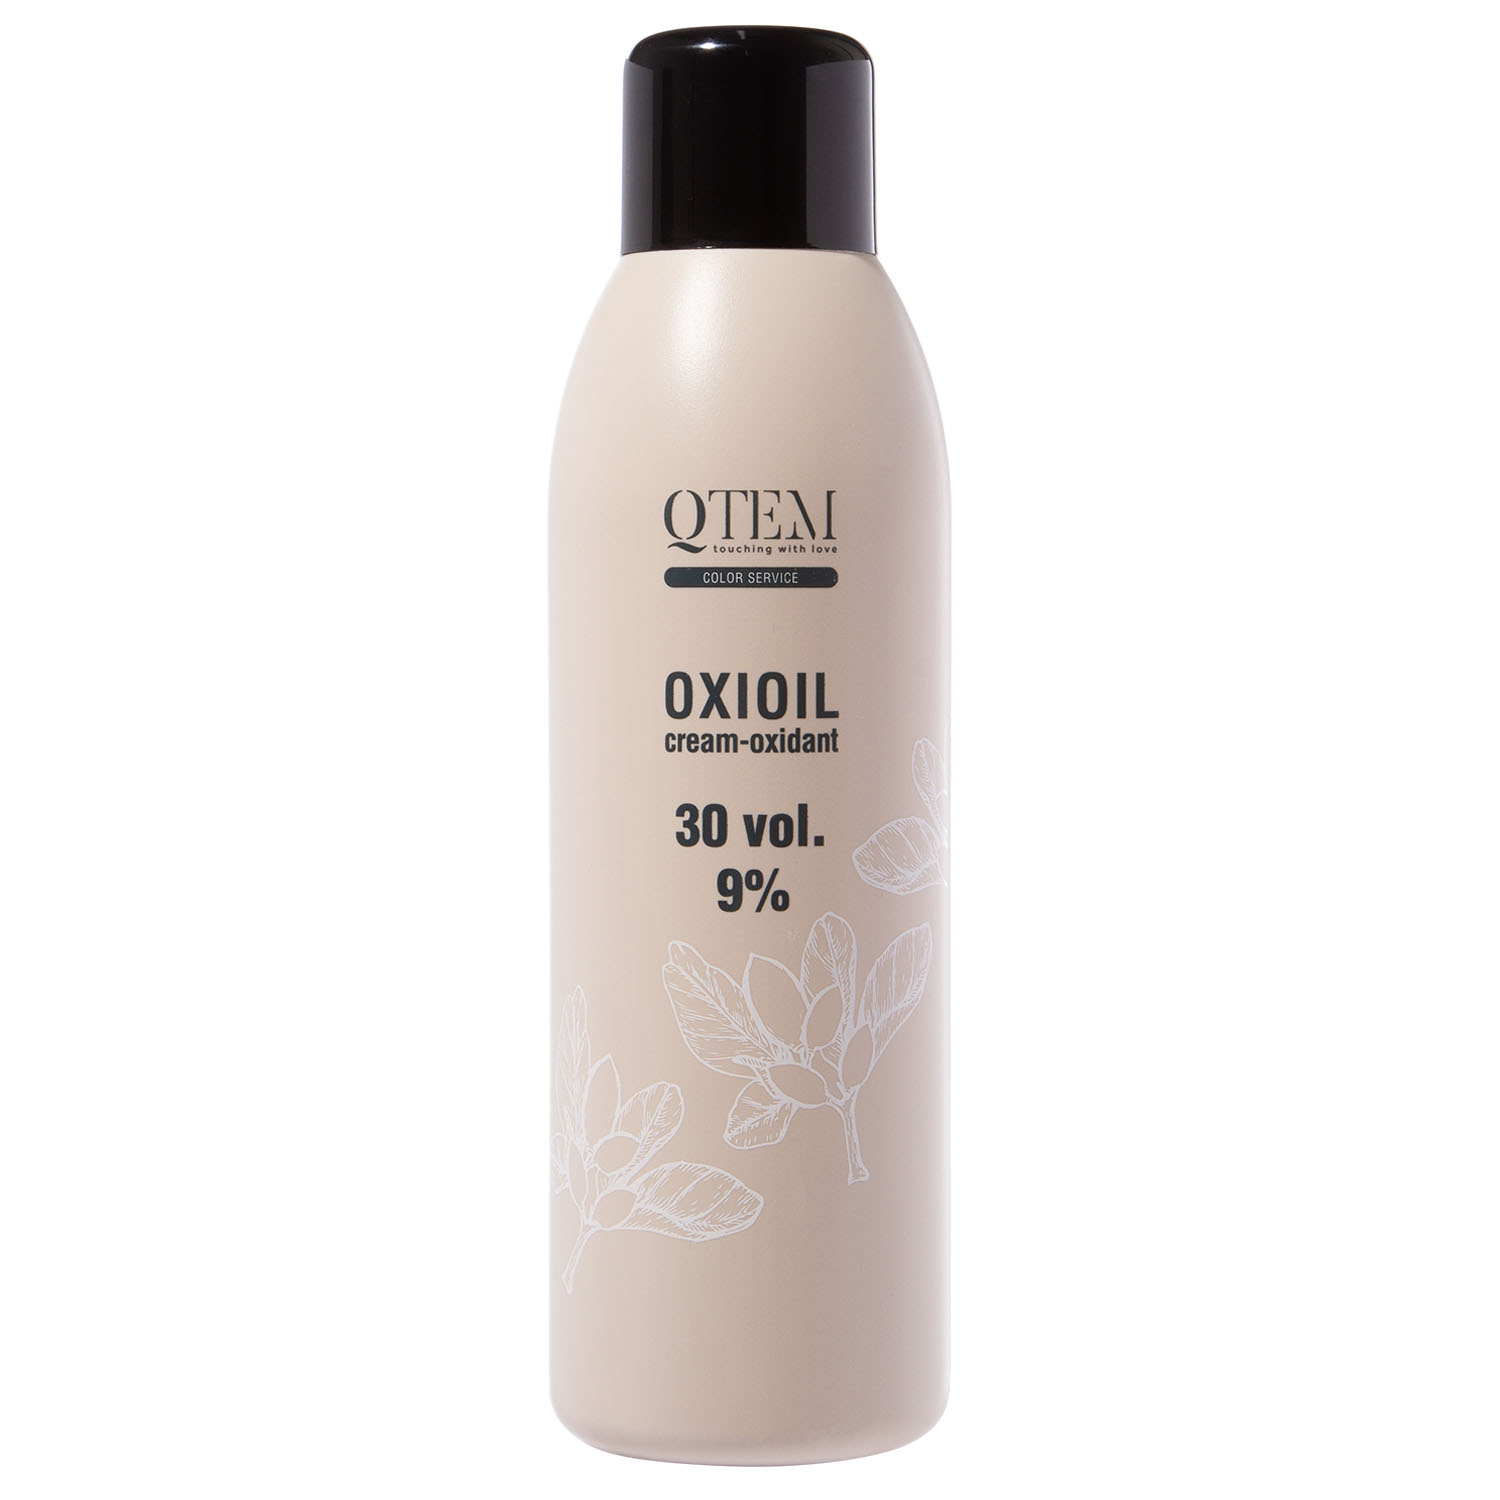 цена Qtem Универсальный крем-оксидант Oxioil 9% (30 Vol.), 1000 мл (Qtem, Color Service)